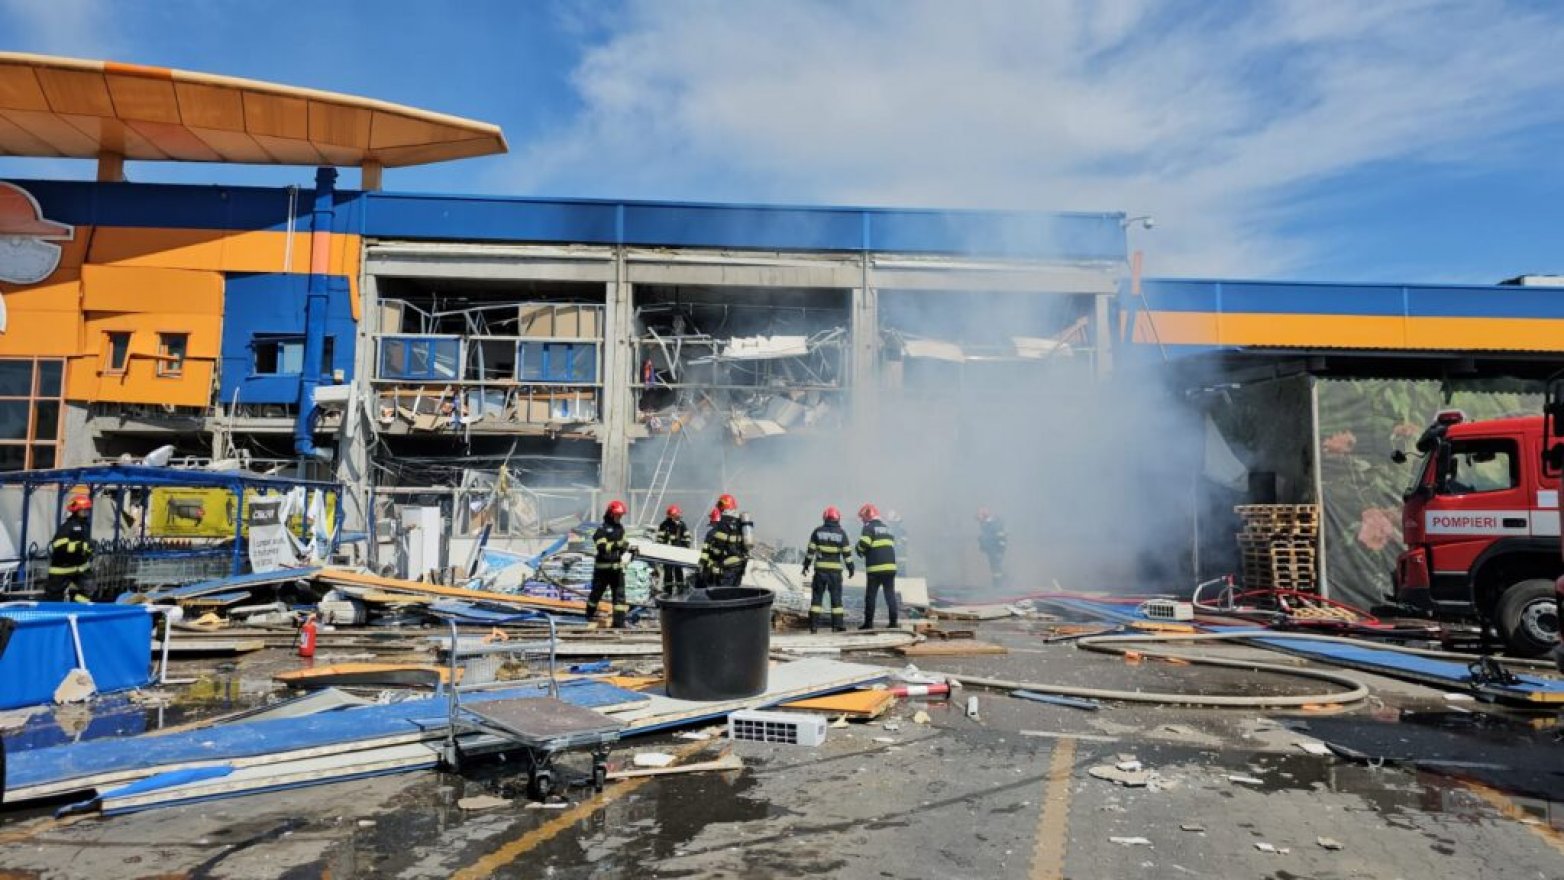 Hatalmas robbanás történt egy romániai barkácsáruházban, többen megsérültek (VIDEÓ)